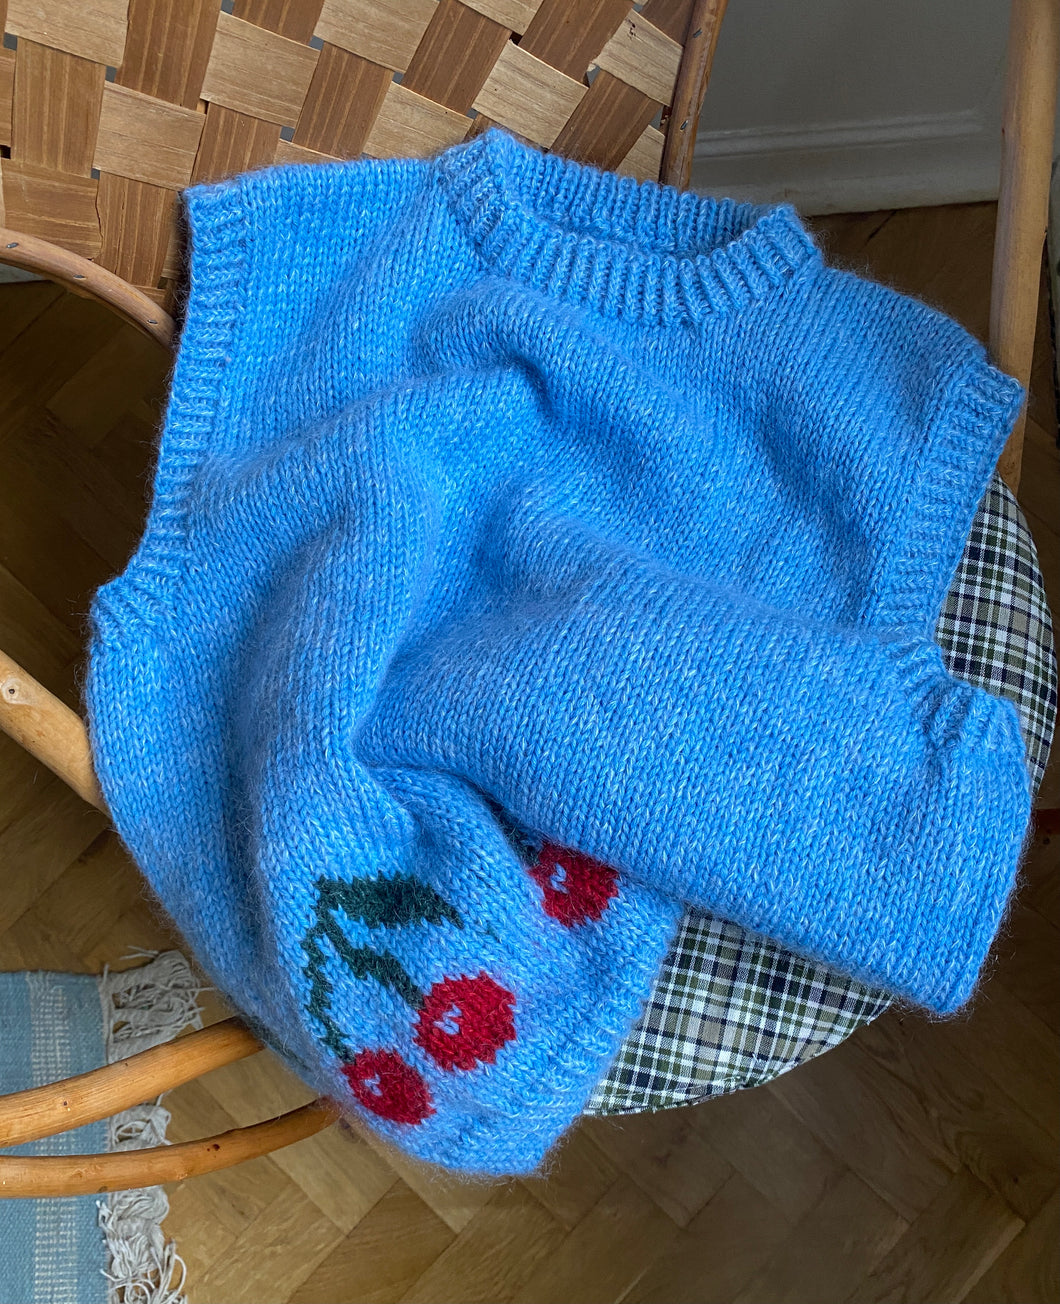 Deima's daily vest - knitting pattern (dansk)